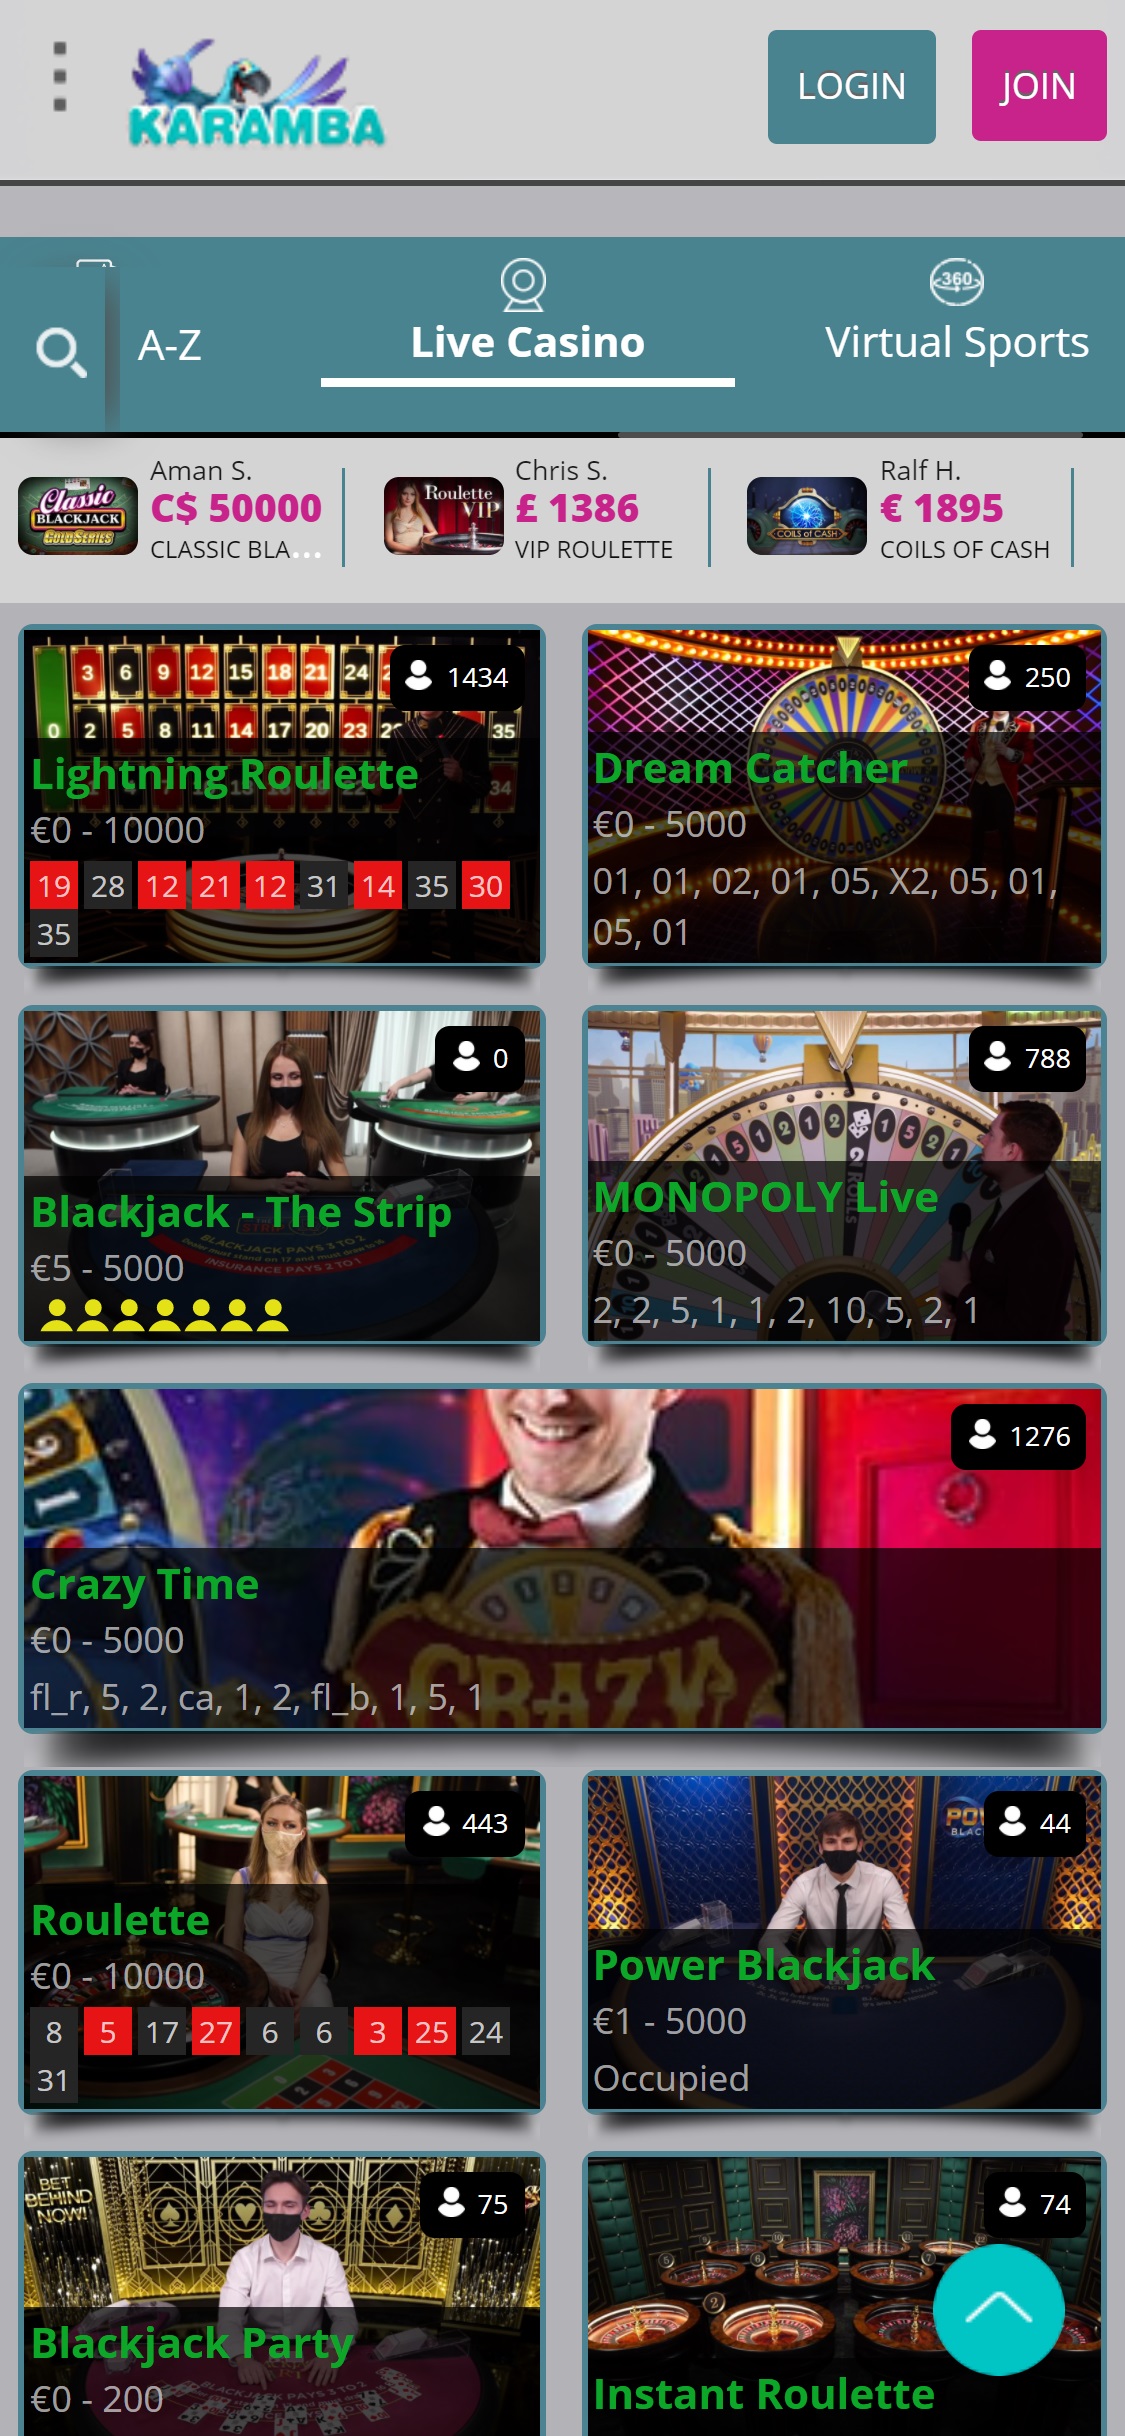 Karamba Casino Mobile Live Dealer Games Review